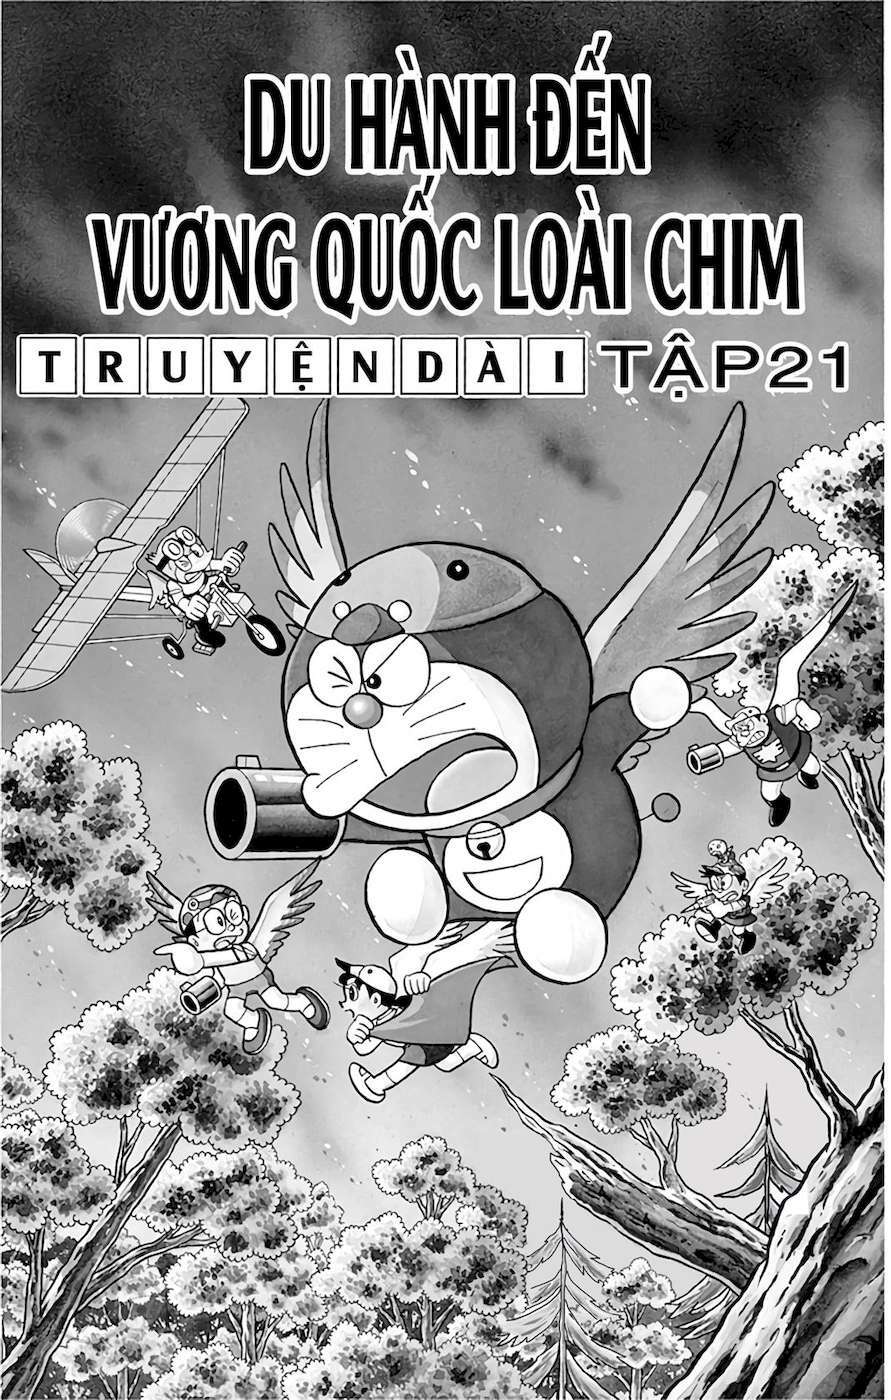 Truyện Tranh Doraemon: Du Hành Đến Vương Quốc Loài Chim trang 2